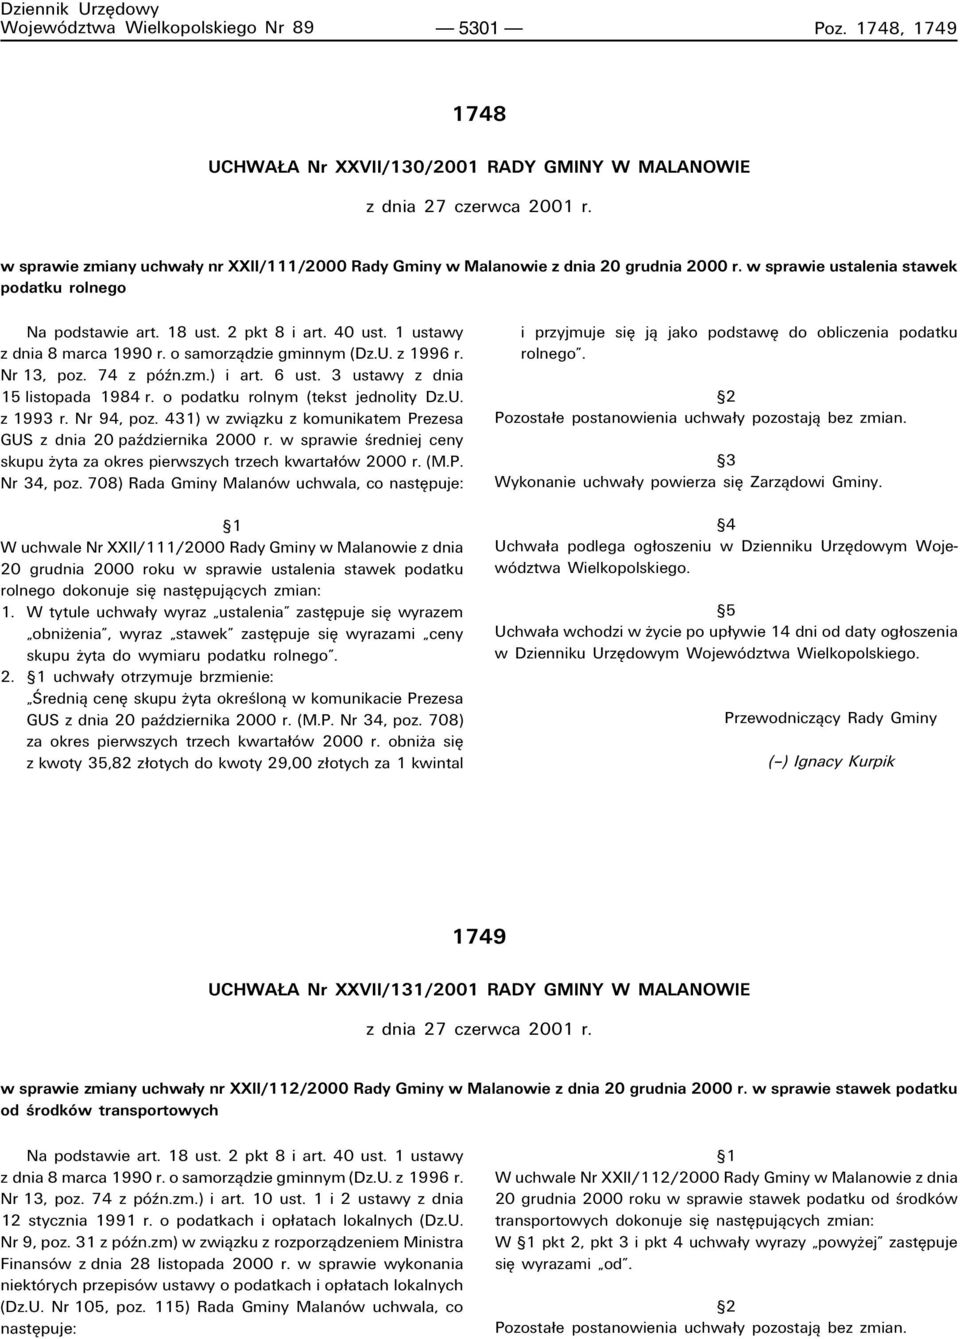 1 ustawy z dnia 8 marca 1990 r. o samorzπdzie gminnym (Dz.U. z 1996 r. Nr 13, poz. 74 z pûün.zm.) i art. 6 ust. 3 ustawy z dnia 15 listopada 1984 r. o podatku rolnym (tekst jednolity Dz.U. z 1993 r.